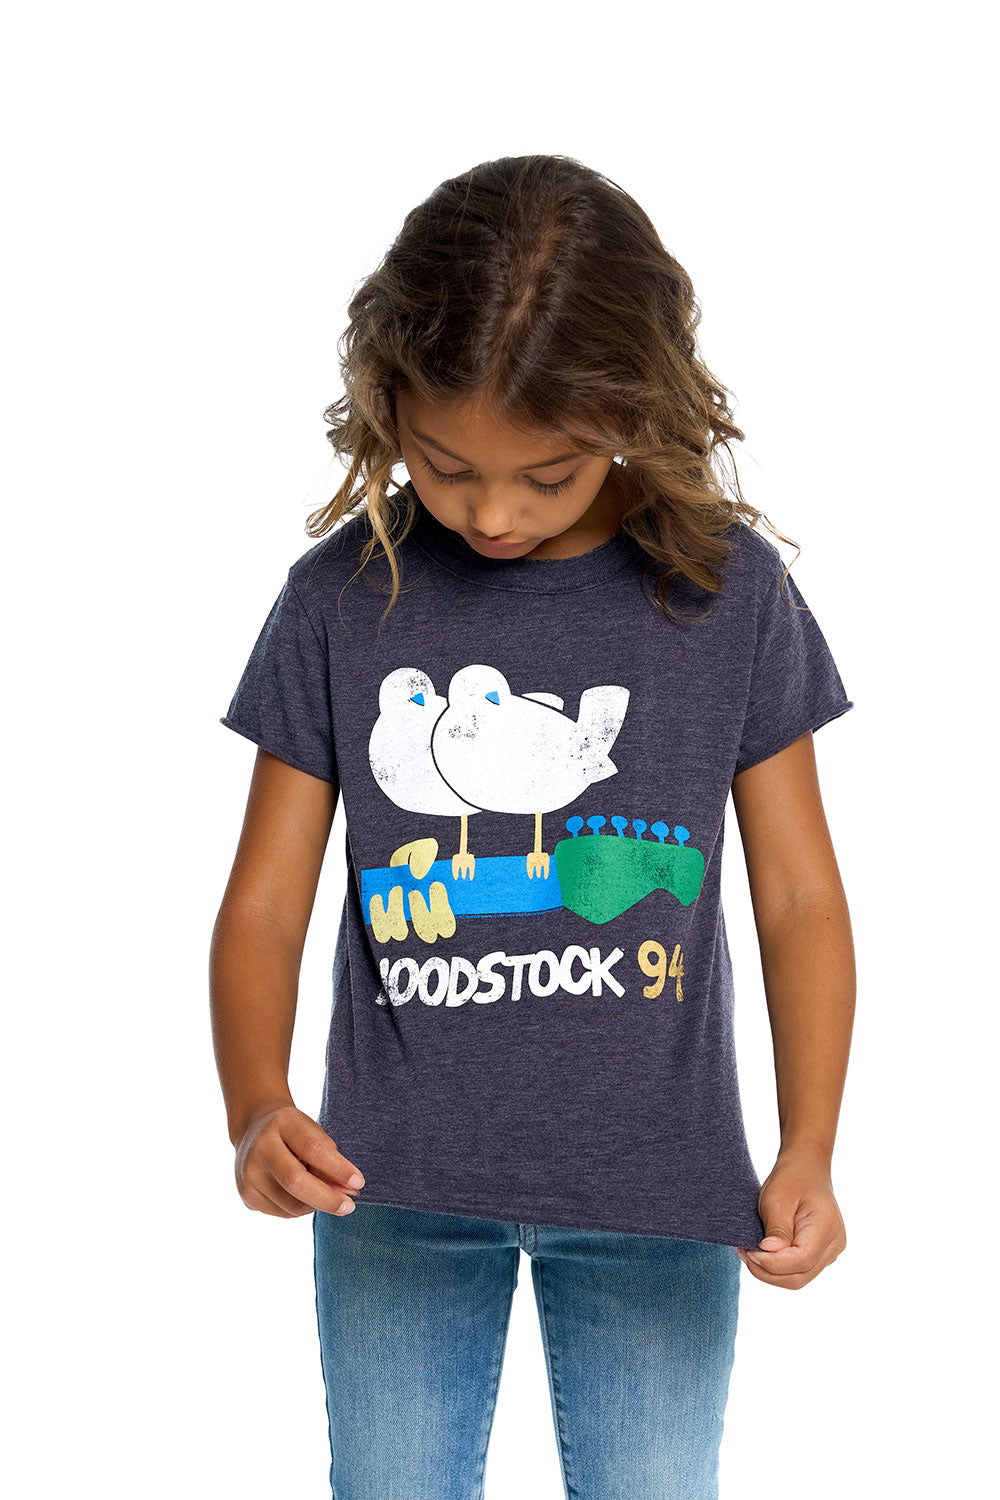 Woodstock - Woodstock 94 GIRLS chaserbrand